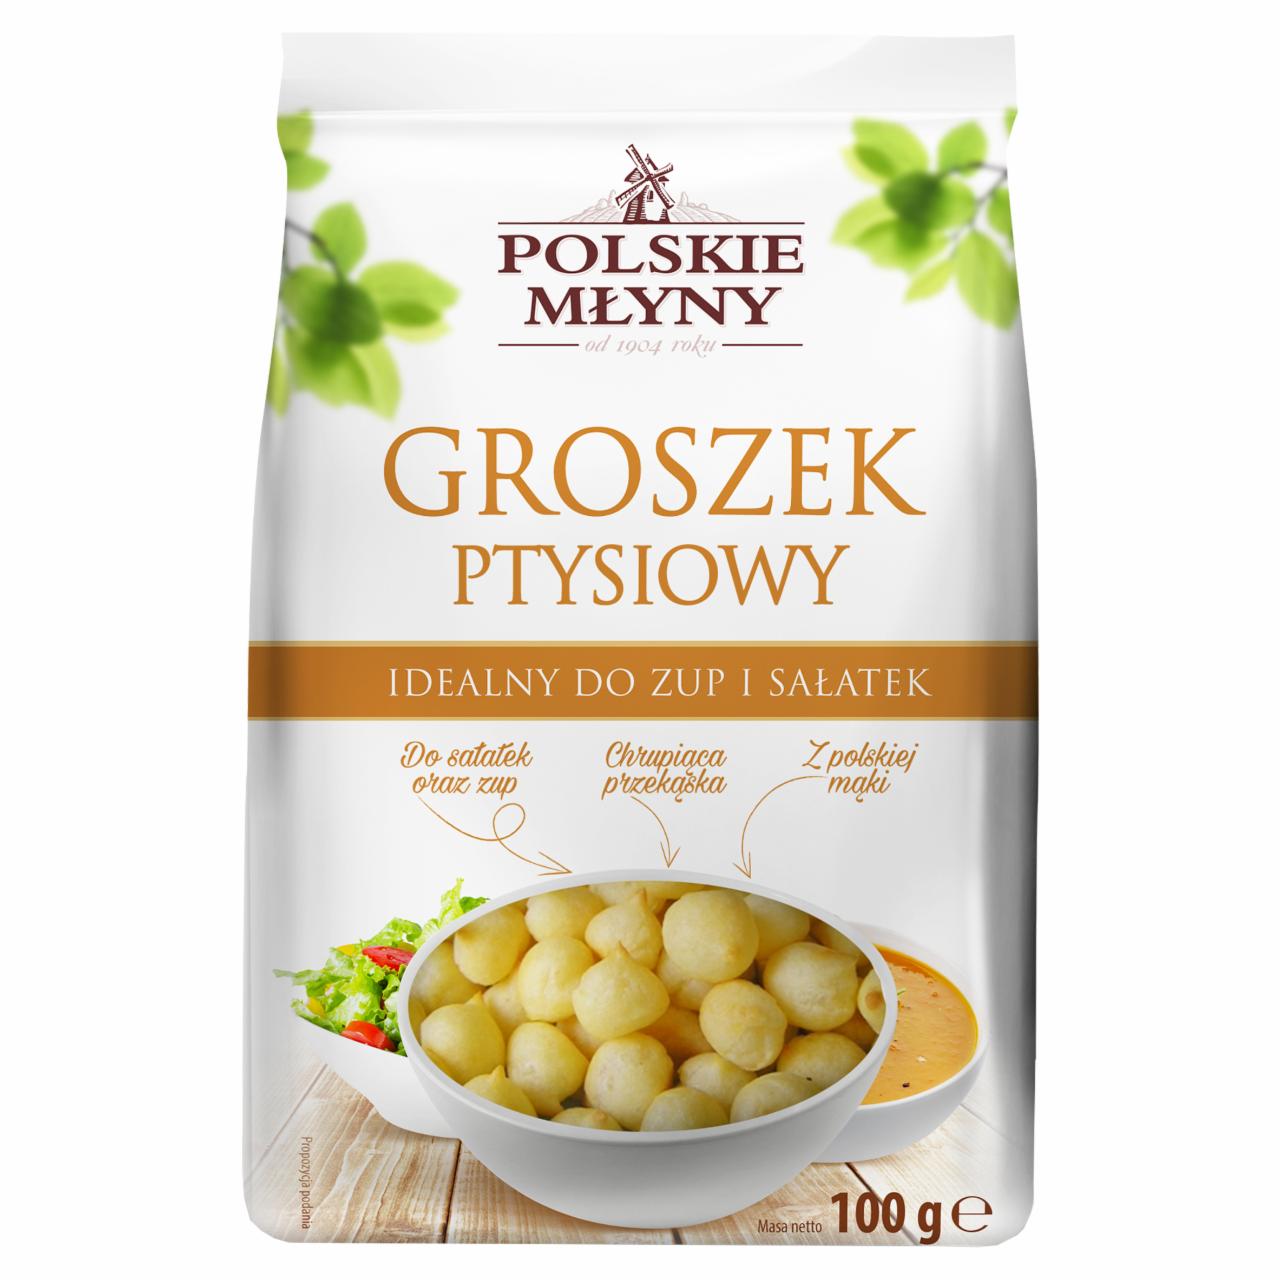 Zdjęcia - Polskie Młyny Groszek ptysiowy 100 g